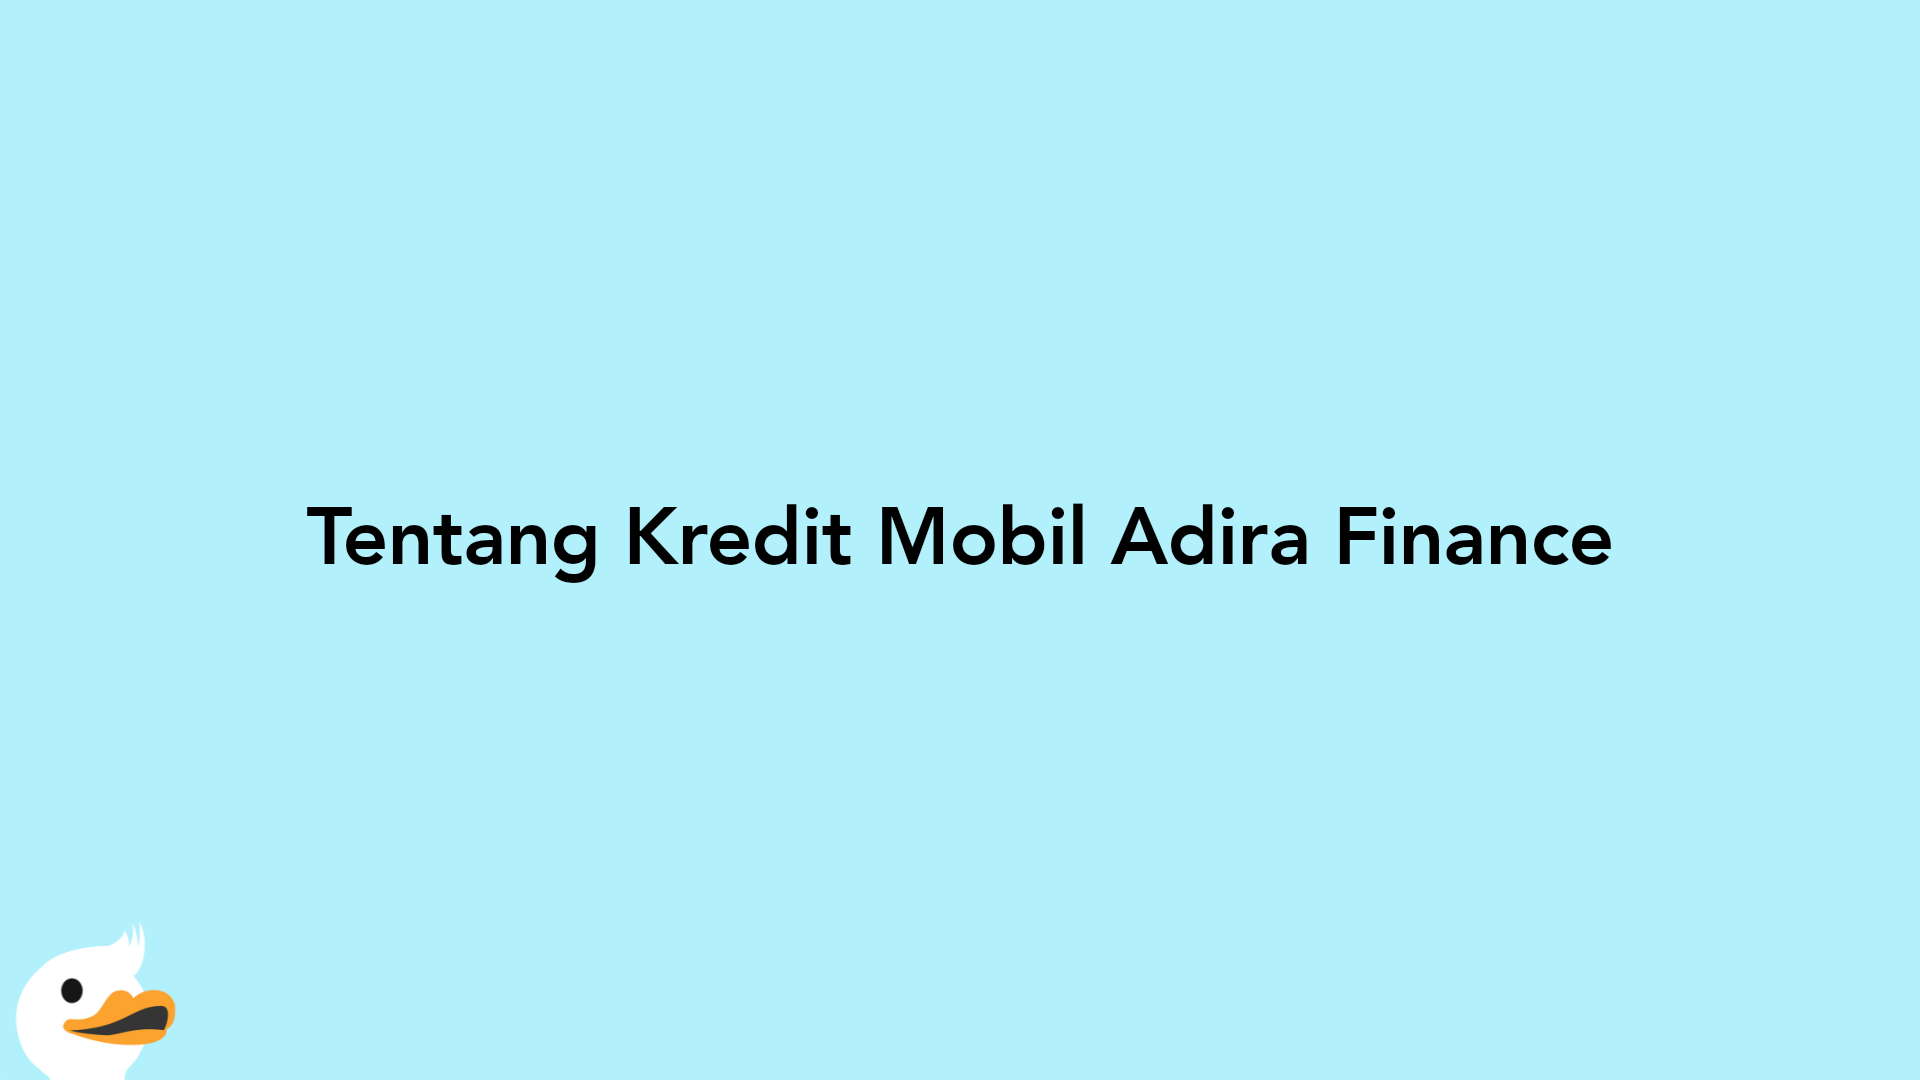 Tentang Kredit Mobil Adira Finance